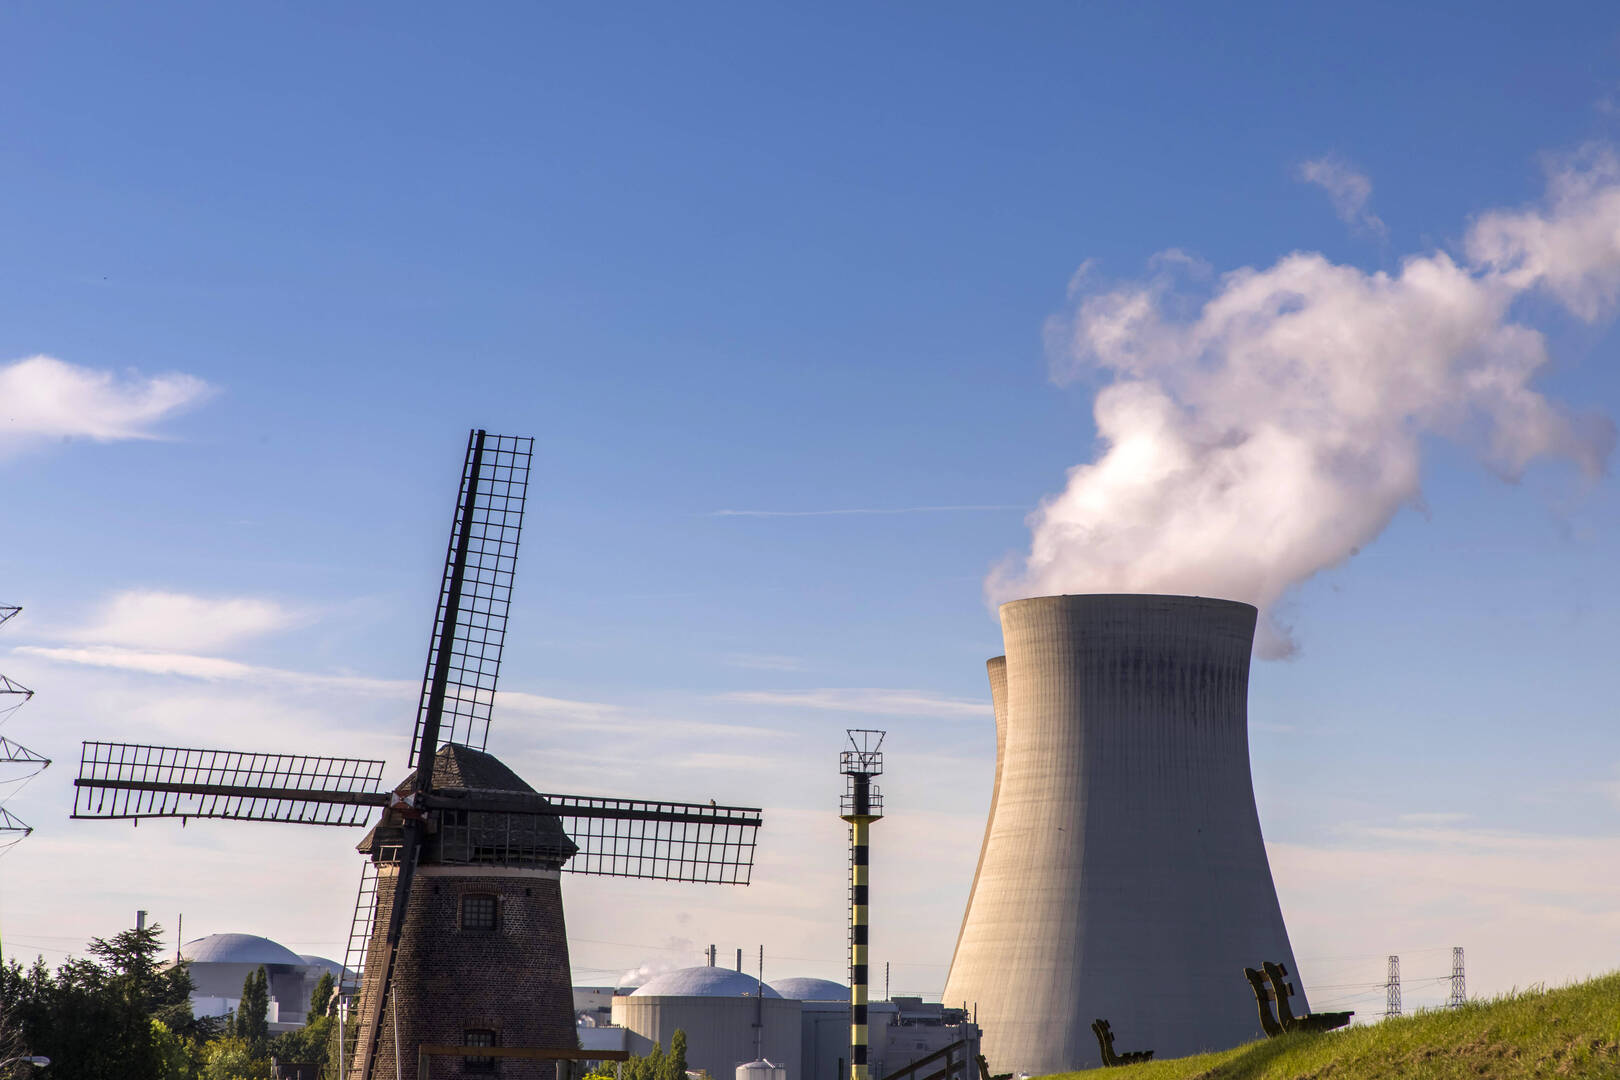 بلجيكا توقف تشغيل مفاعل نووي بسبب تسرب محتمل للهيدروجين